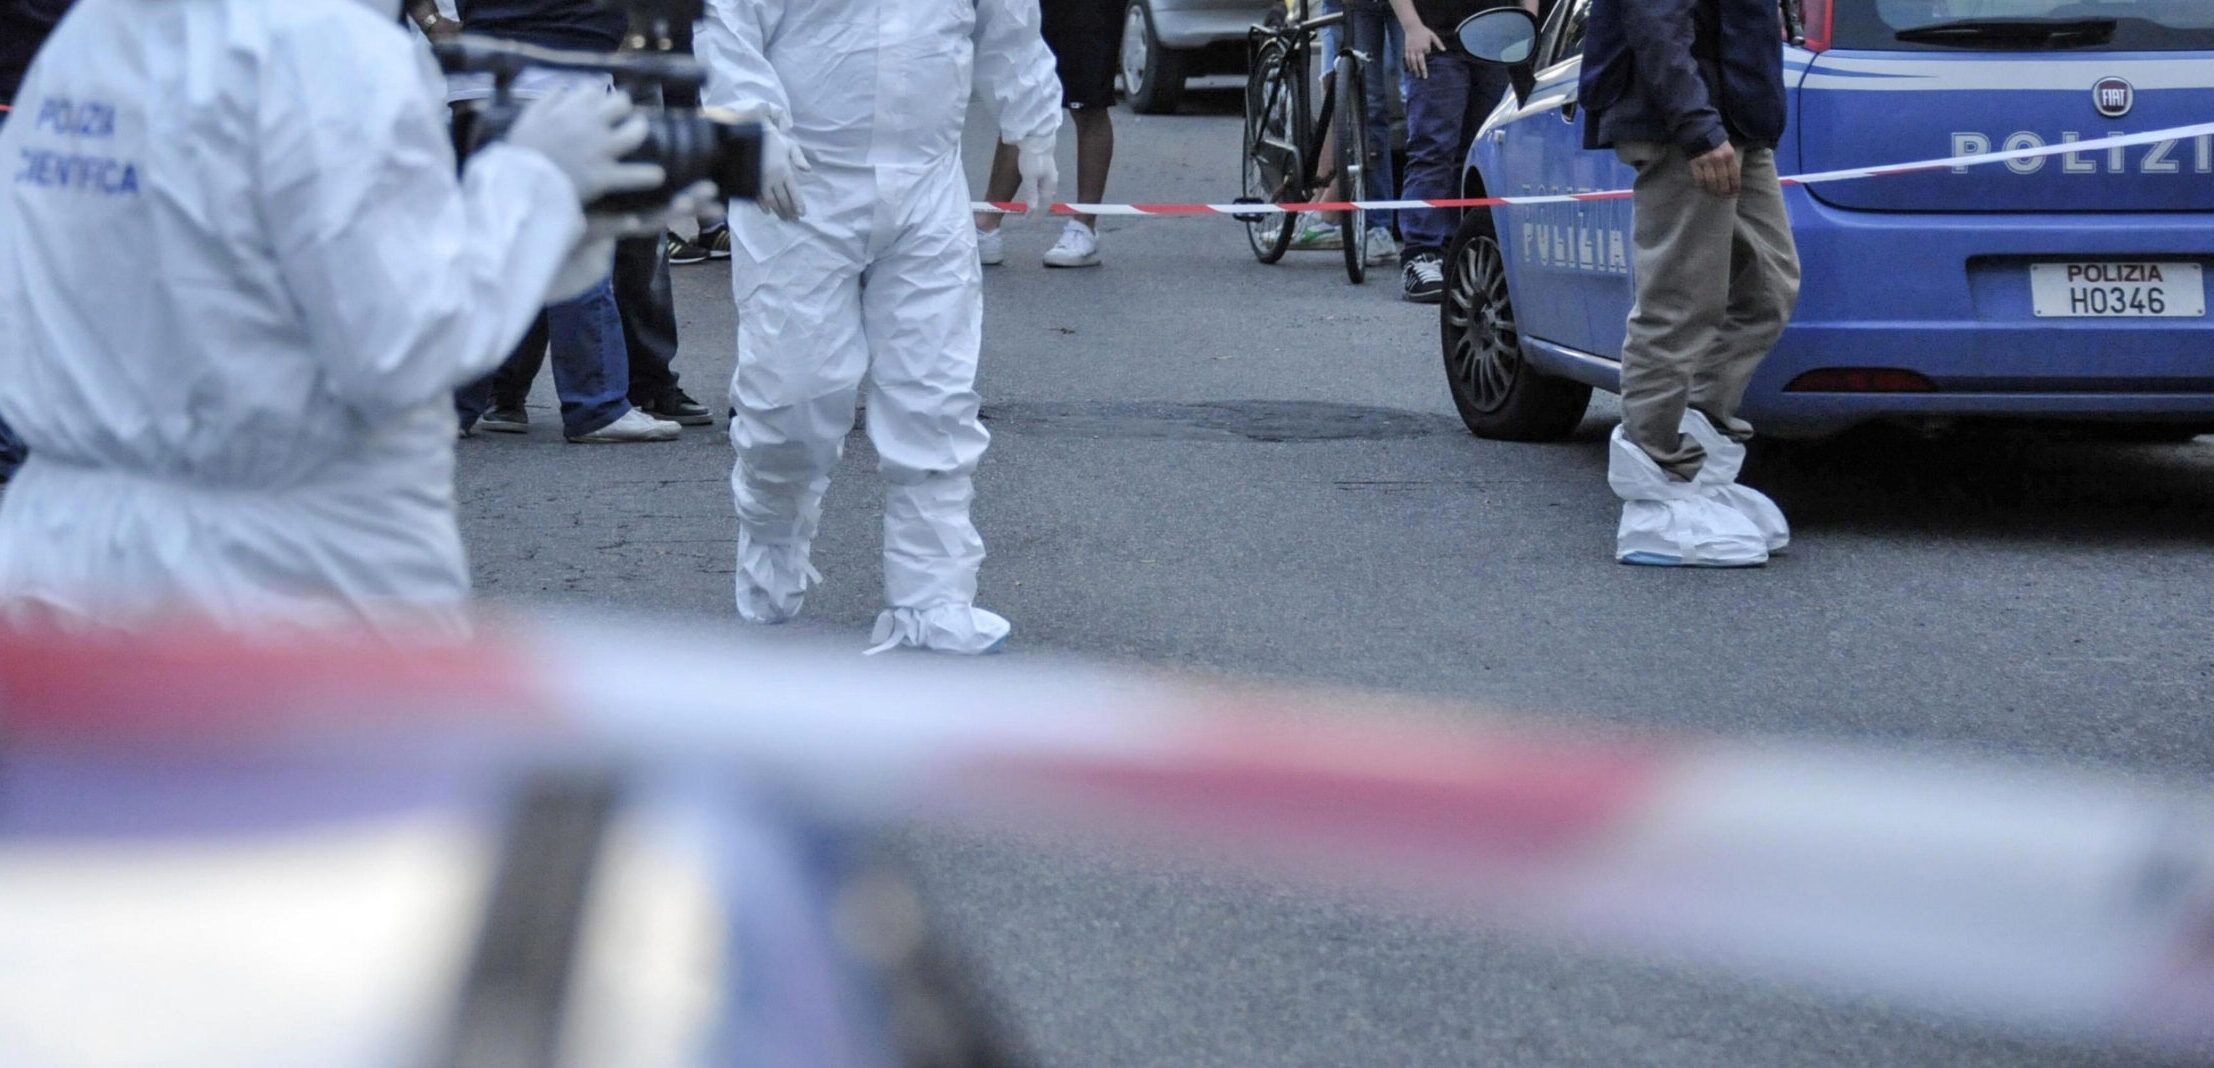 Polizia Scientifica per l'omicidio a Roma